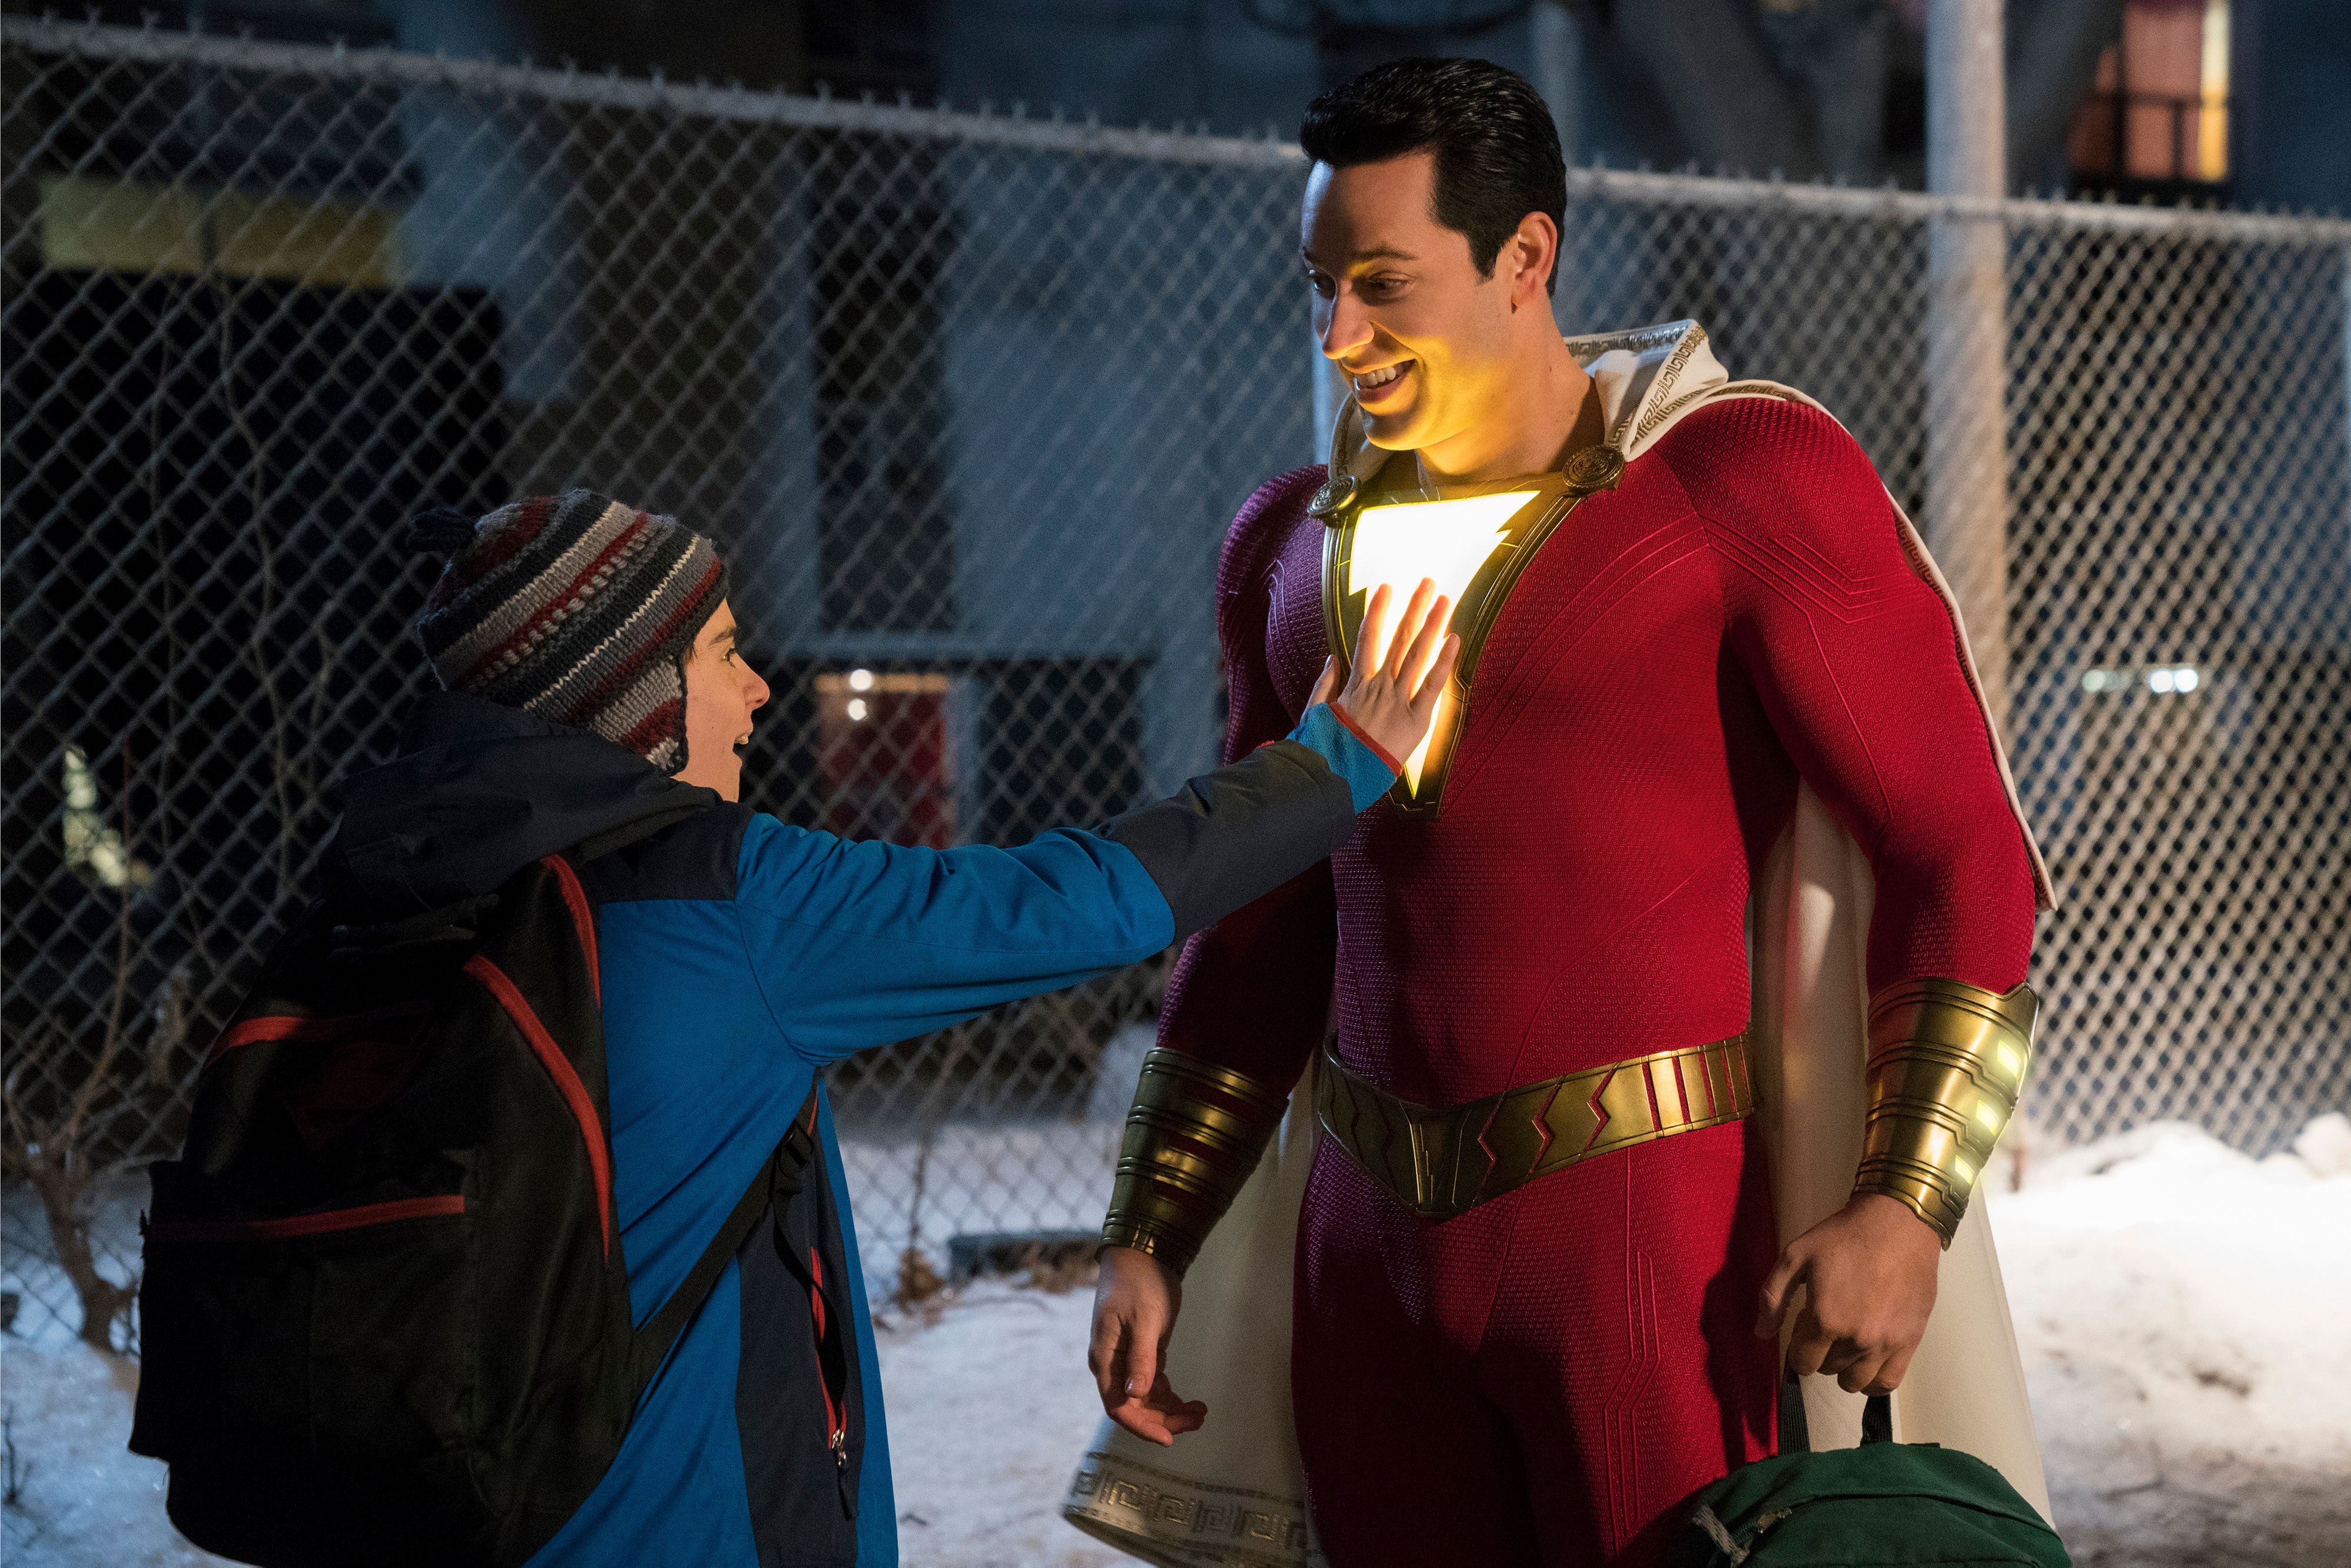 Tras su participación con Marvel, el actor Zachary Levi será el rostro de una estrella de DC.  (Foto Prensa Libre: Warner Bros)